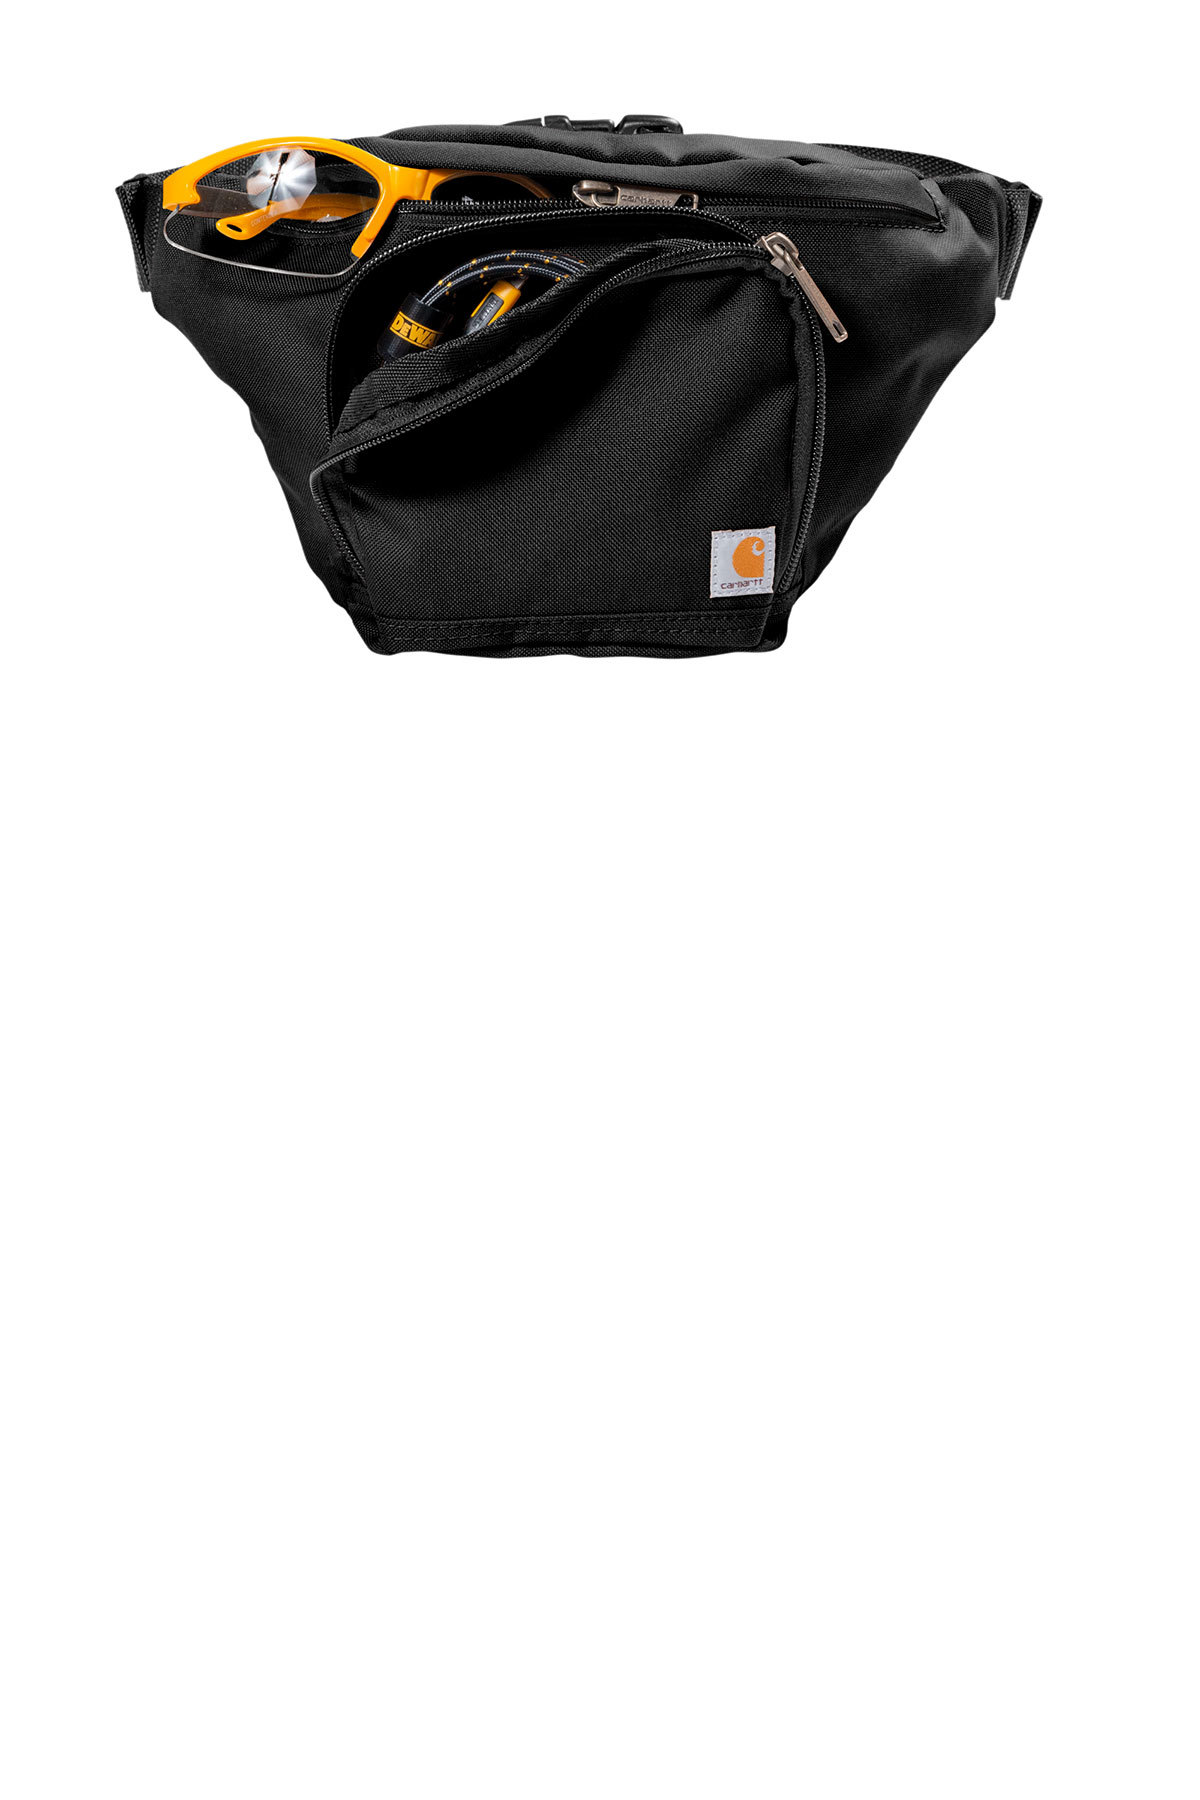 carhartt belt bag